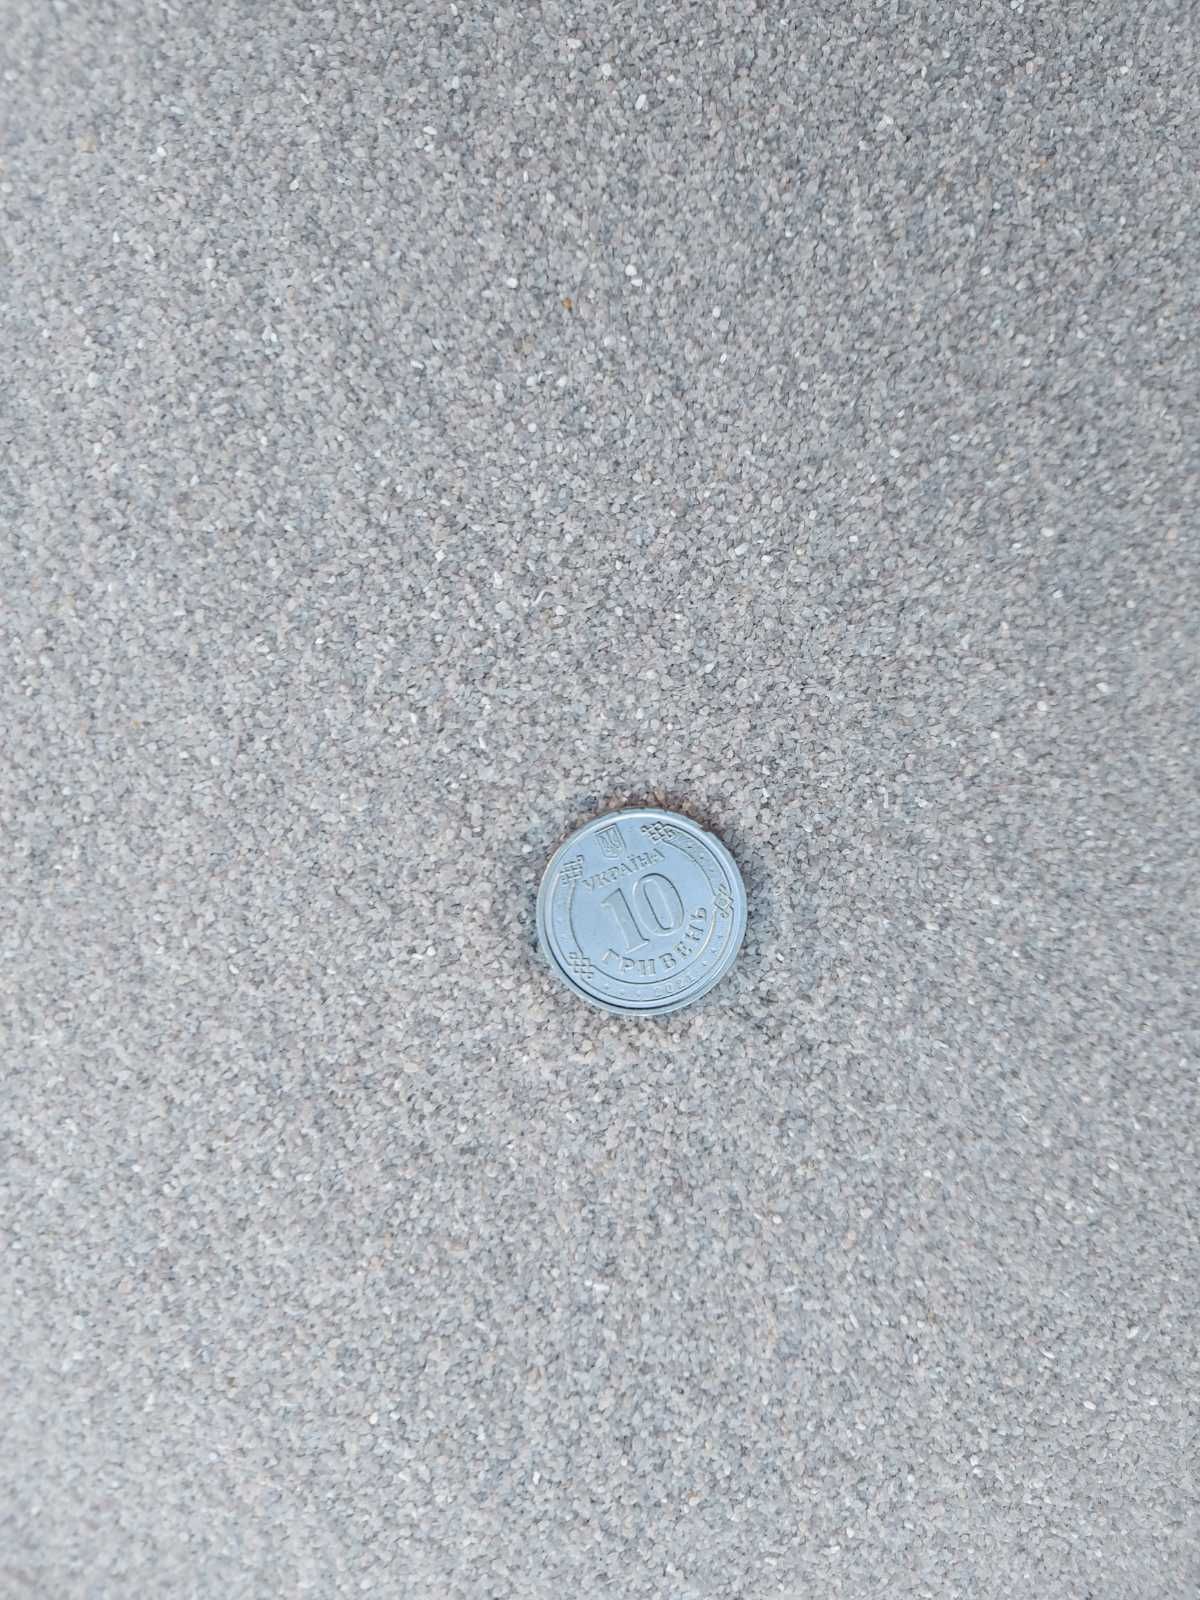 песок кварцевый для работ по пескострую. Можно на фильтры и аквариумы